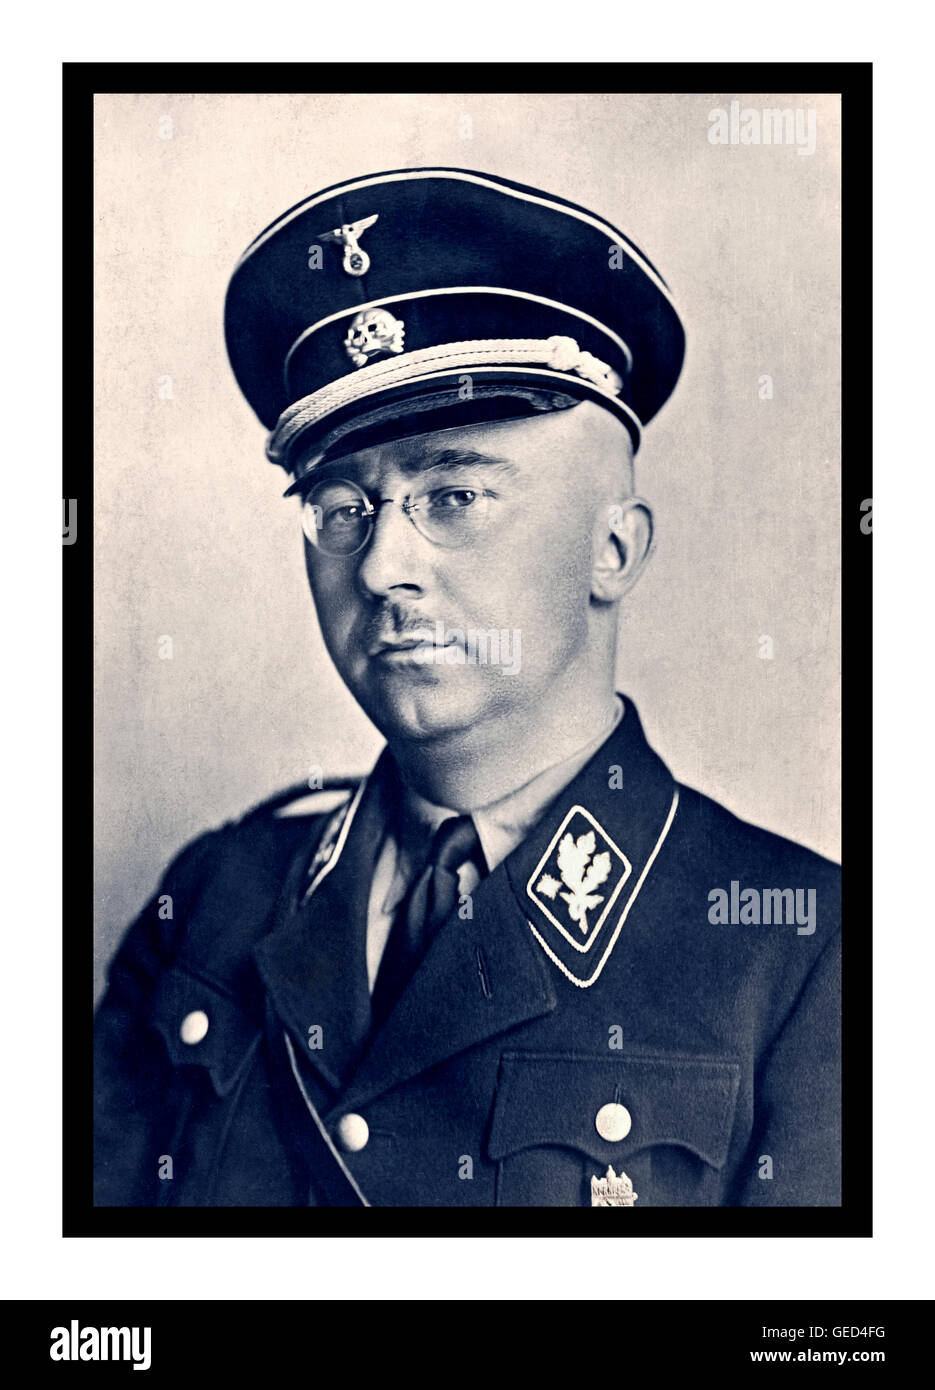 Heinrich Himmler Portrait formel en uniforme Waffen SS. Politicien national-socialiste allemand. Commandant militaire nazi police secrète et principal planificateur nazi de l'Holocauste. Banque D'Images